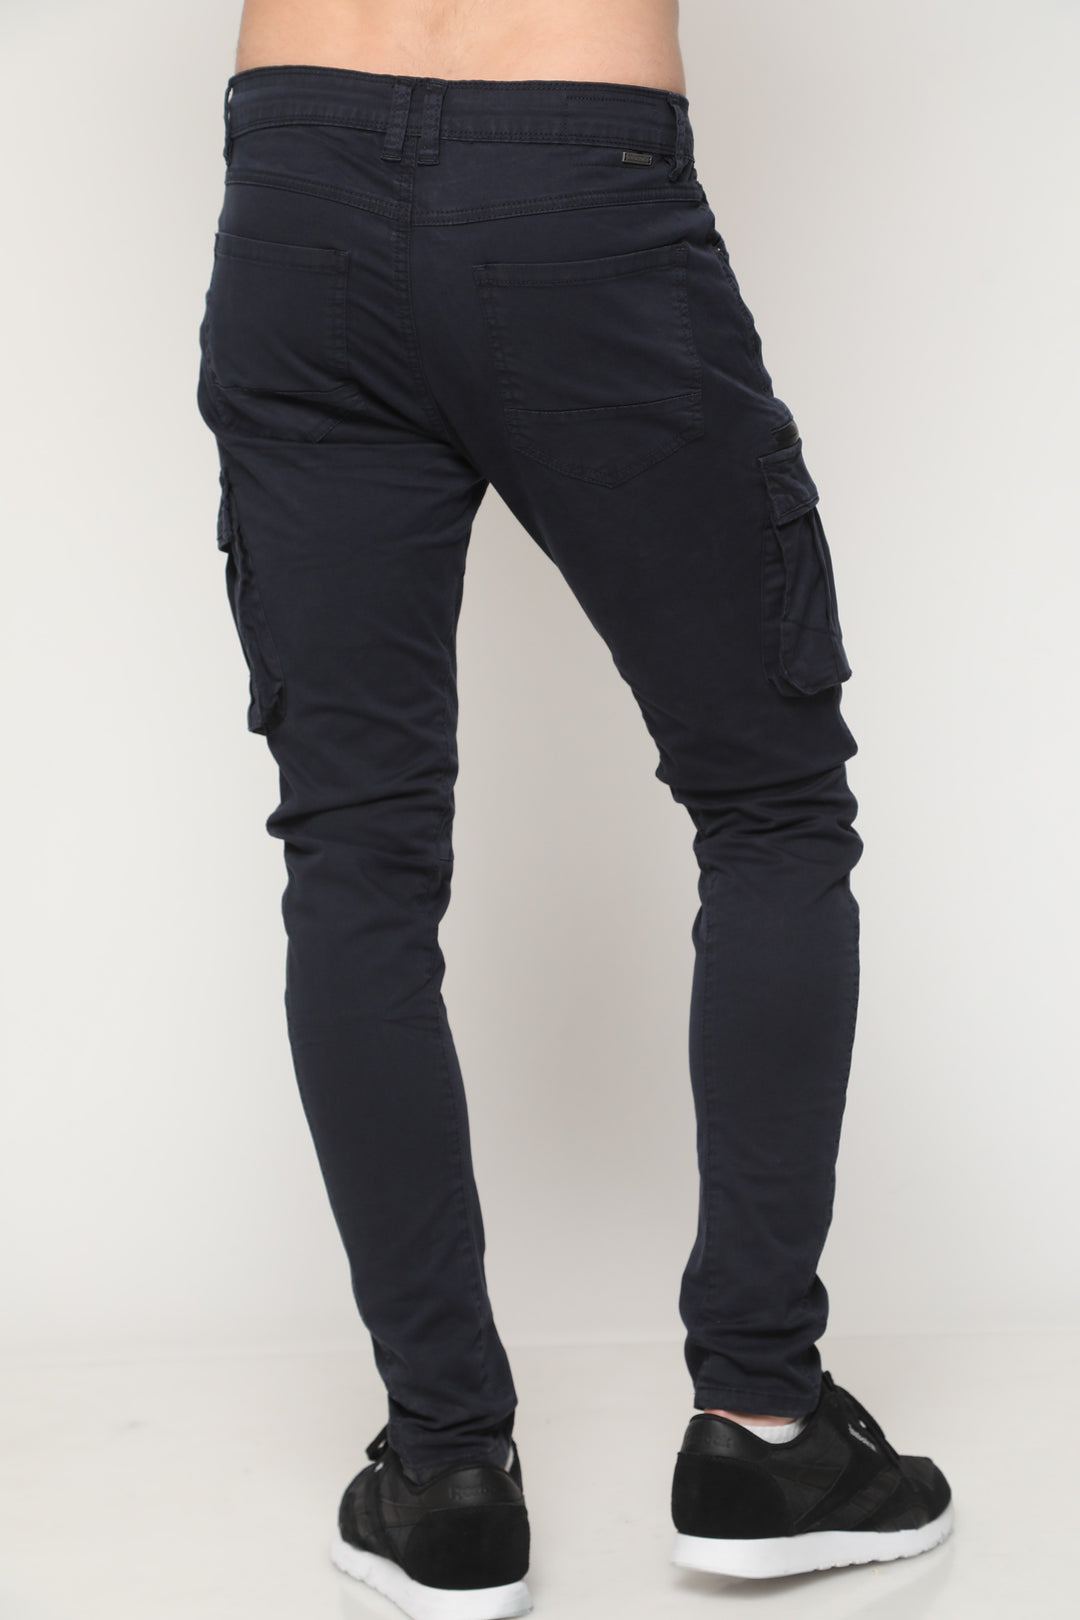 דגמח כחול - canavaro jeans